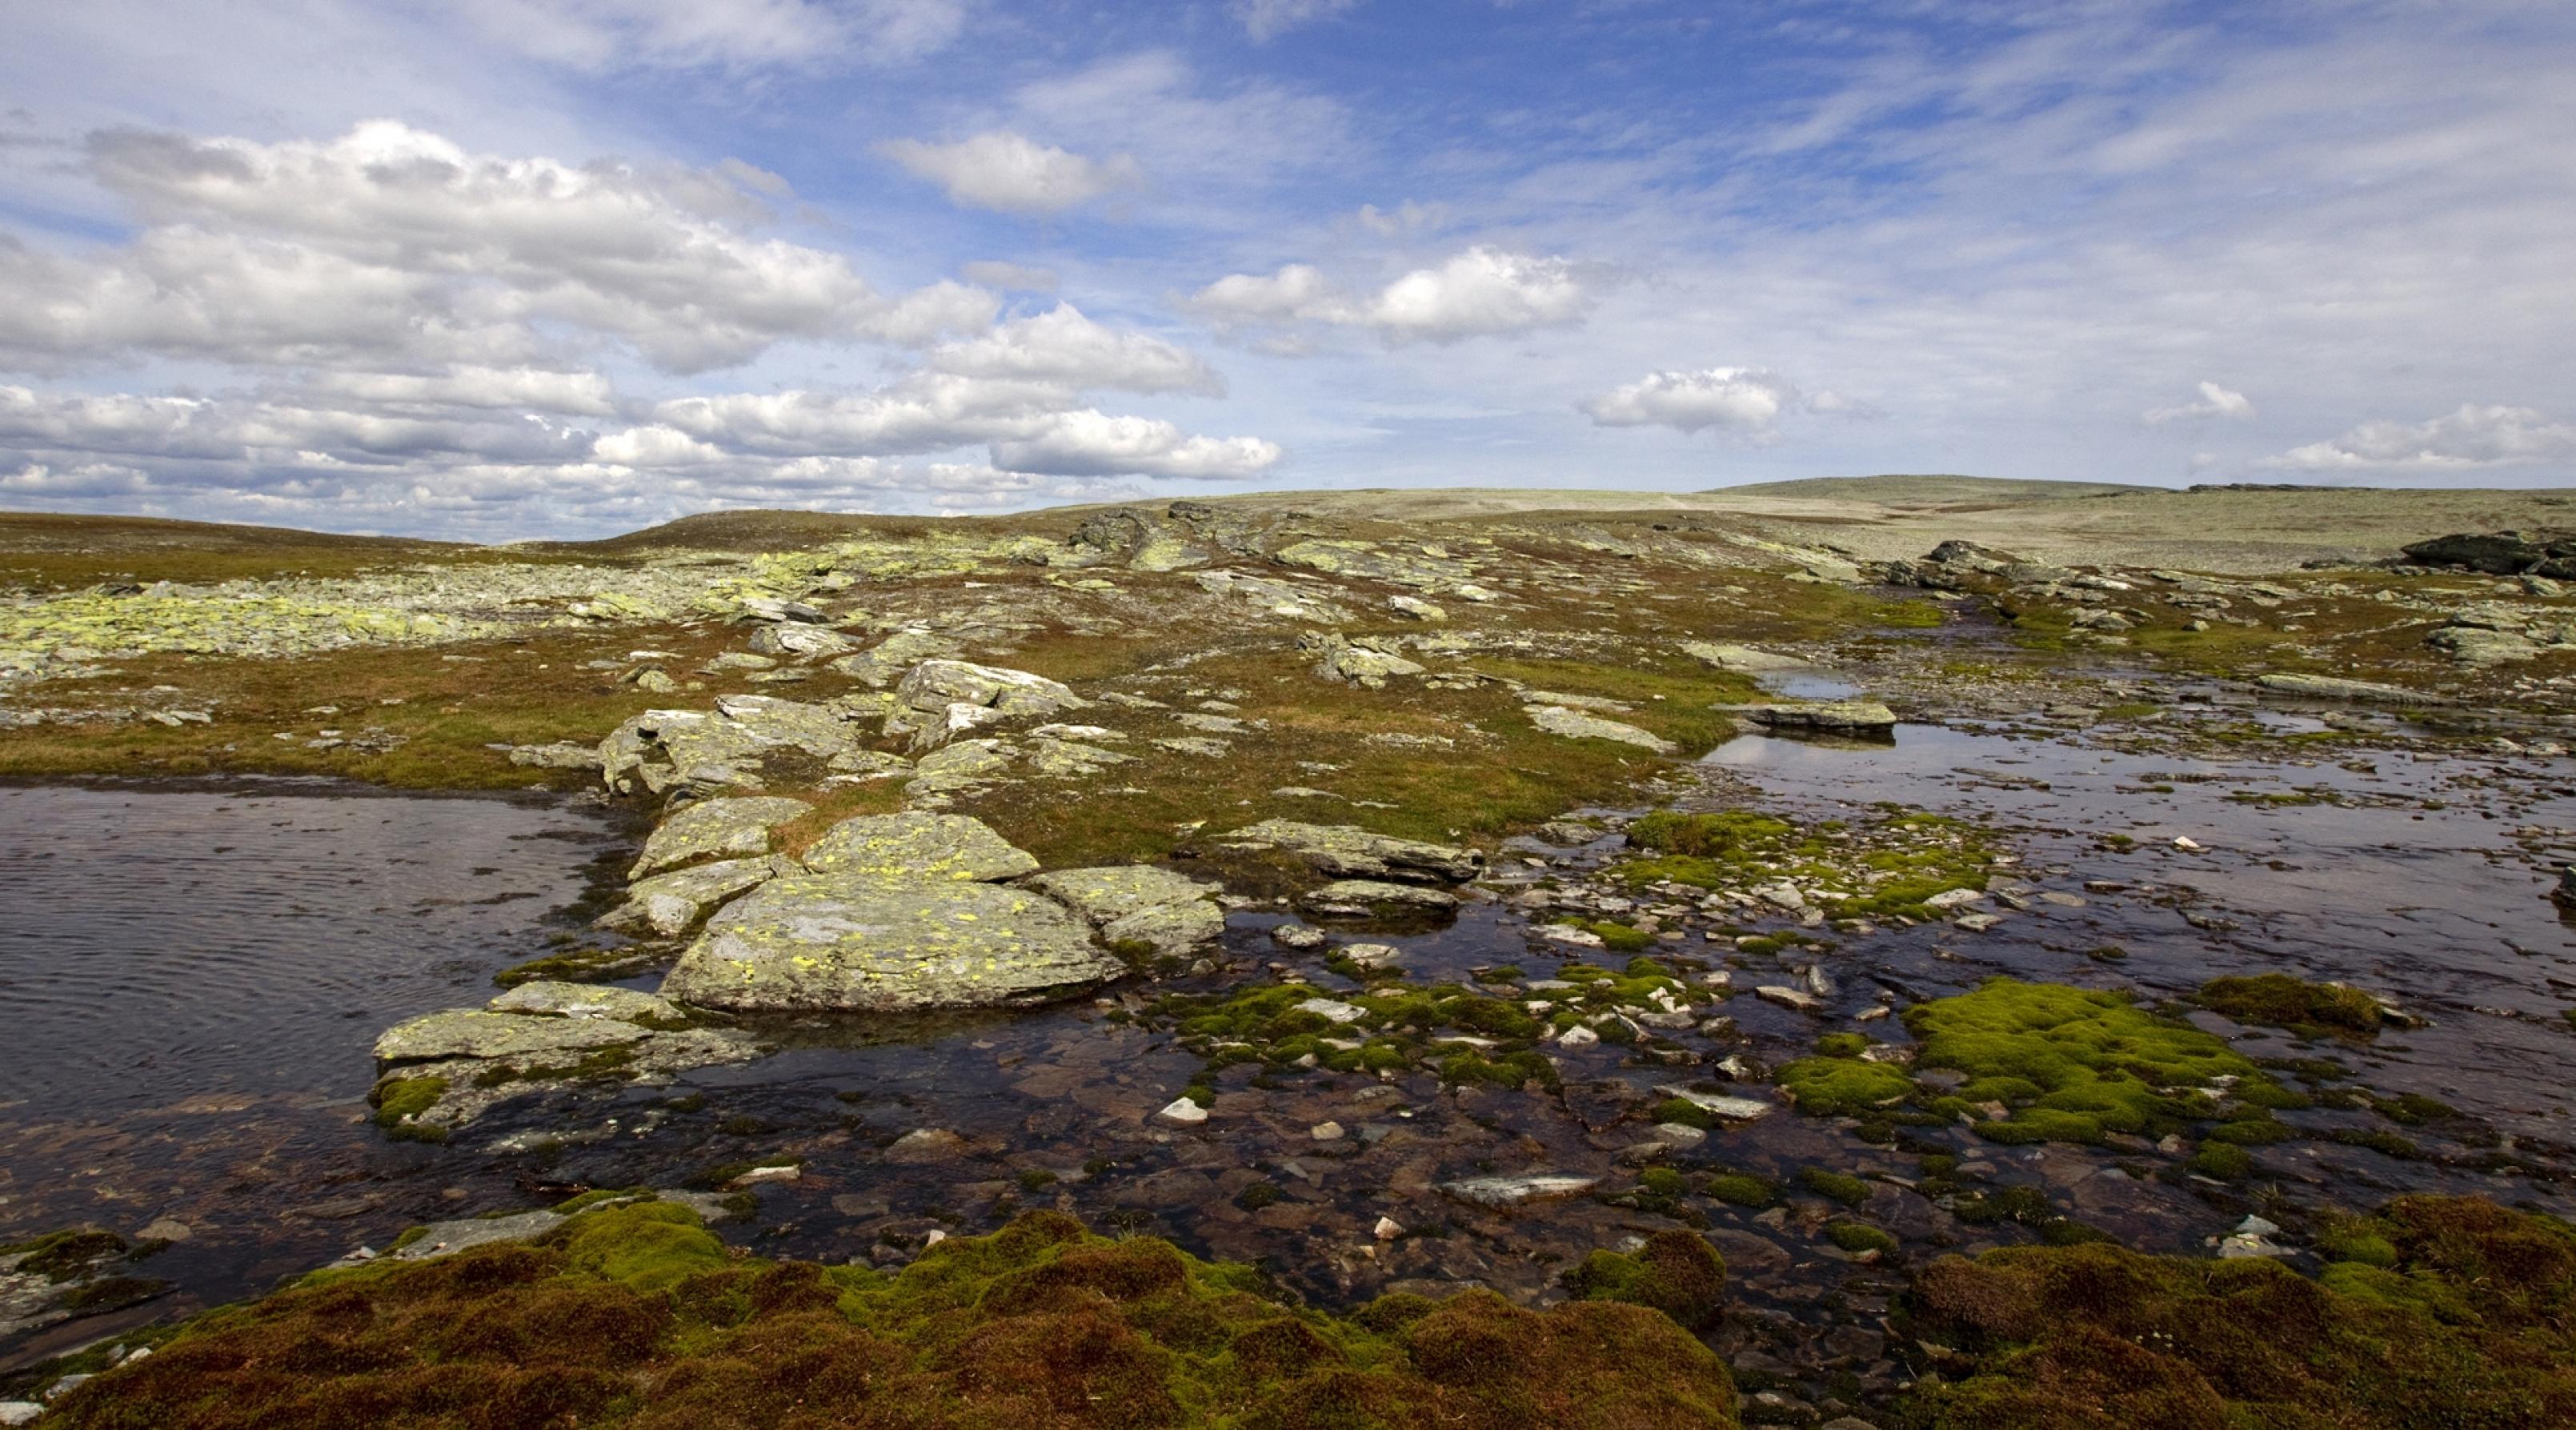 Landschaftsfoto des Dovrefjell in Norwegen. Eine weite mit Moos bewachsene Ebene ohne Bäume oder Sträucher bei blauem wolkenlosen Himmel